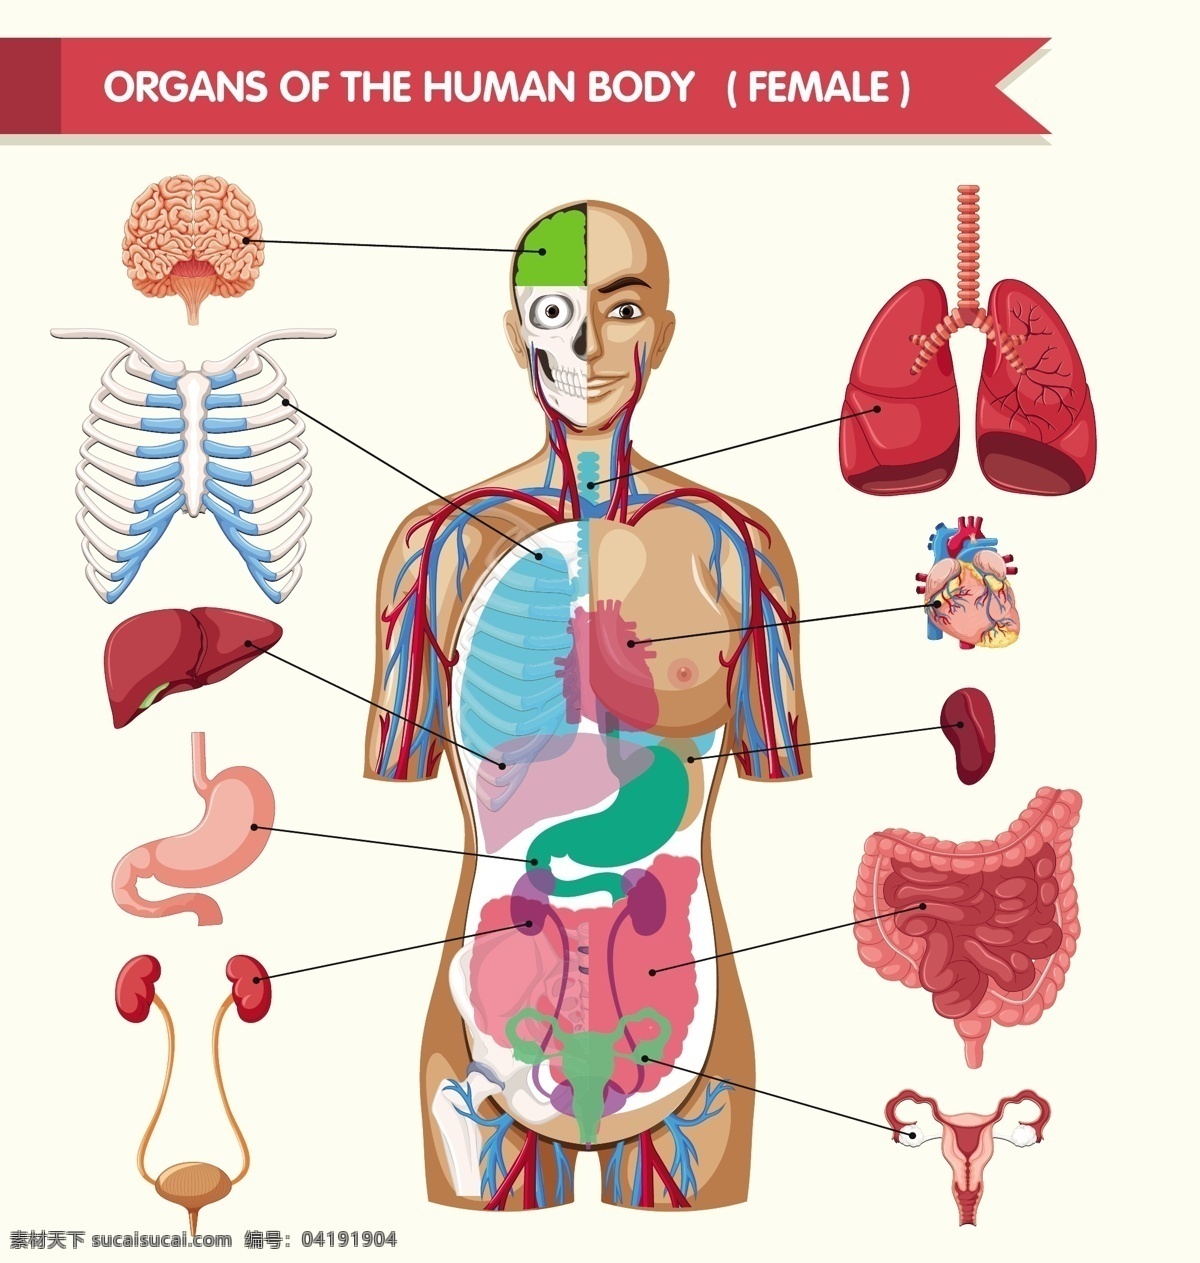 人体器官 脑 人 人体 女性 颜色 胃 肺 肾 器官 部分 有色 肠 肋骨 胰腺